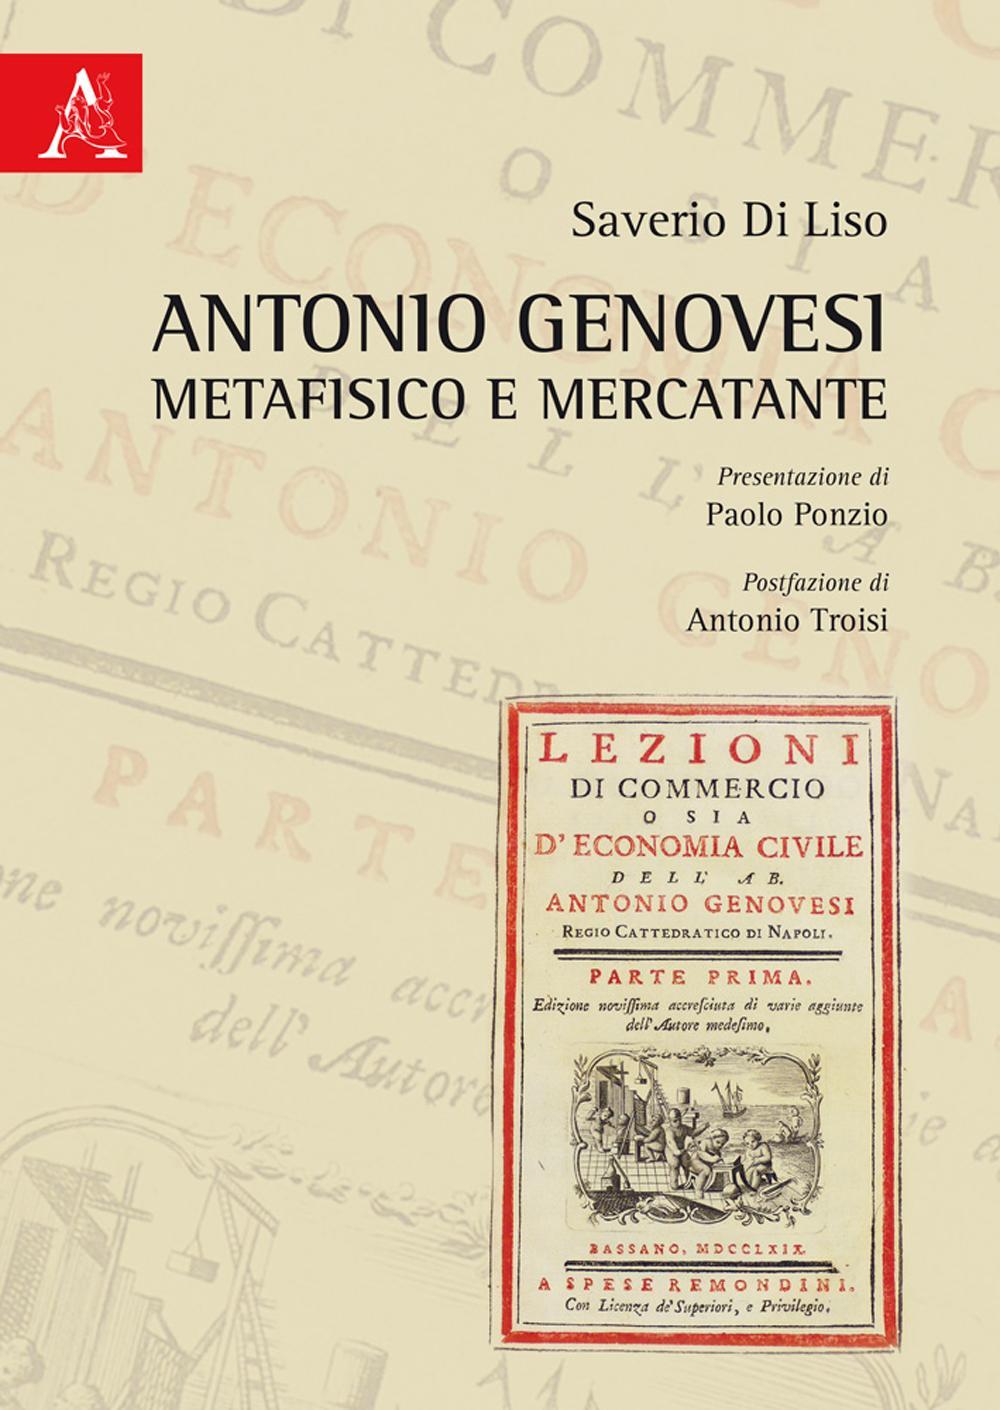 Antonio Genovesi metafisico e mercatante